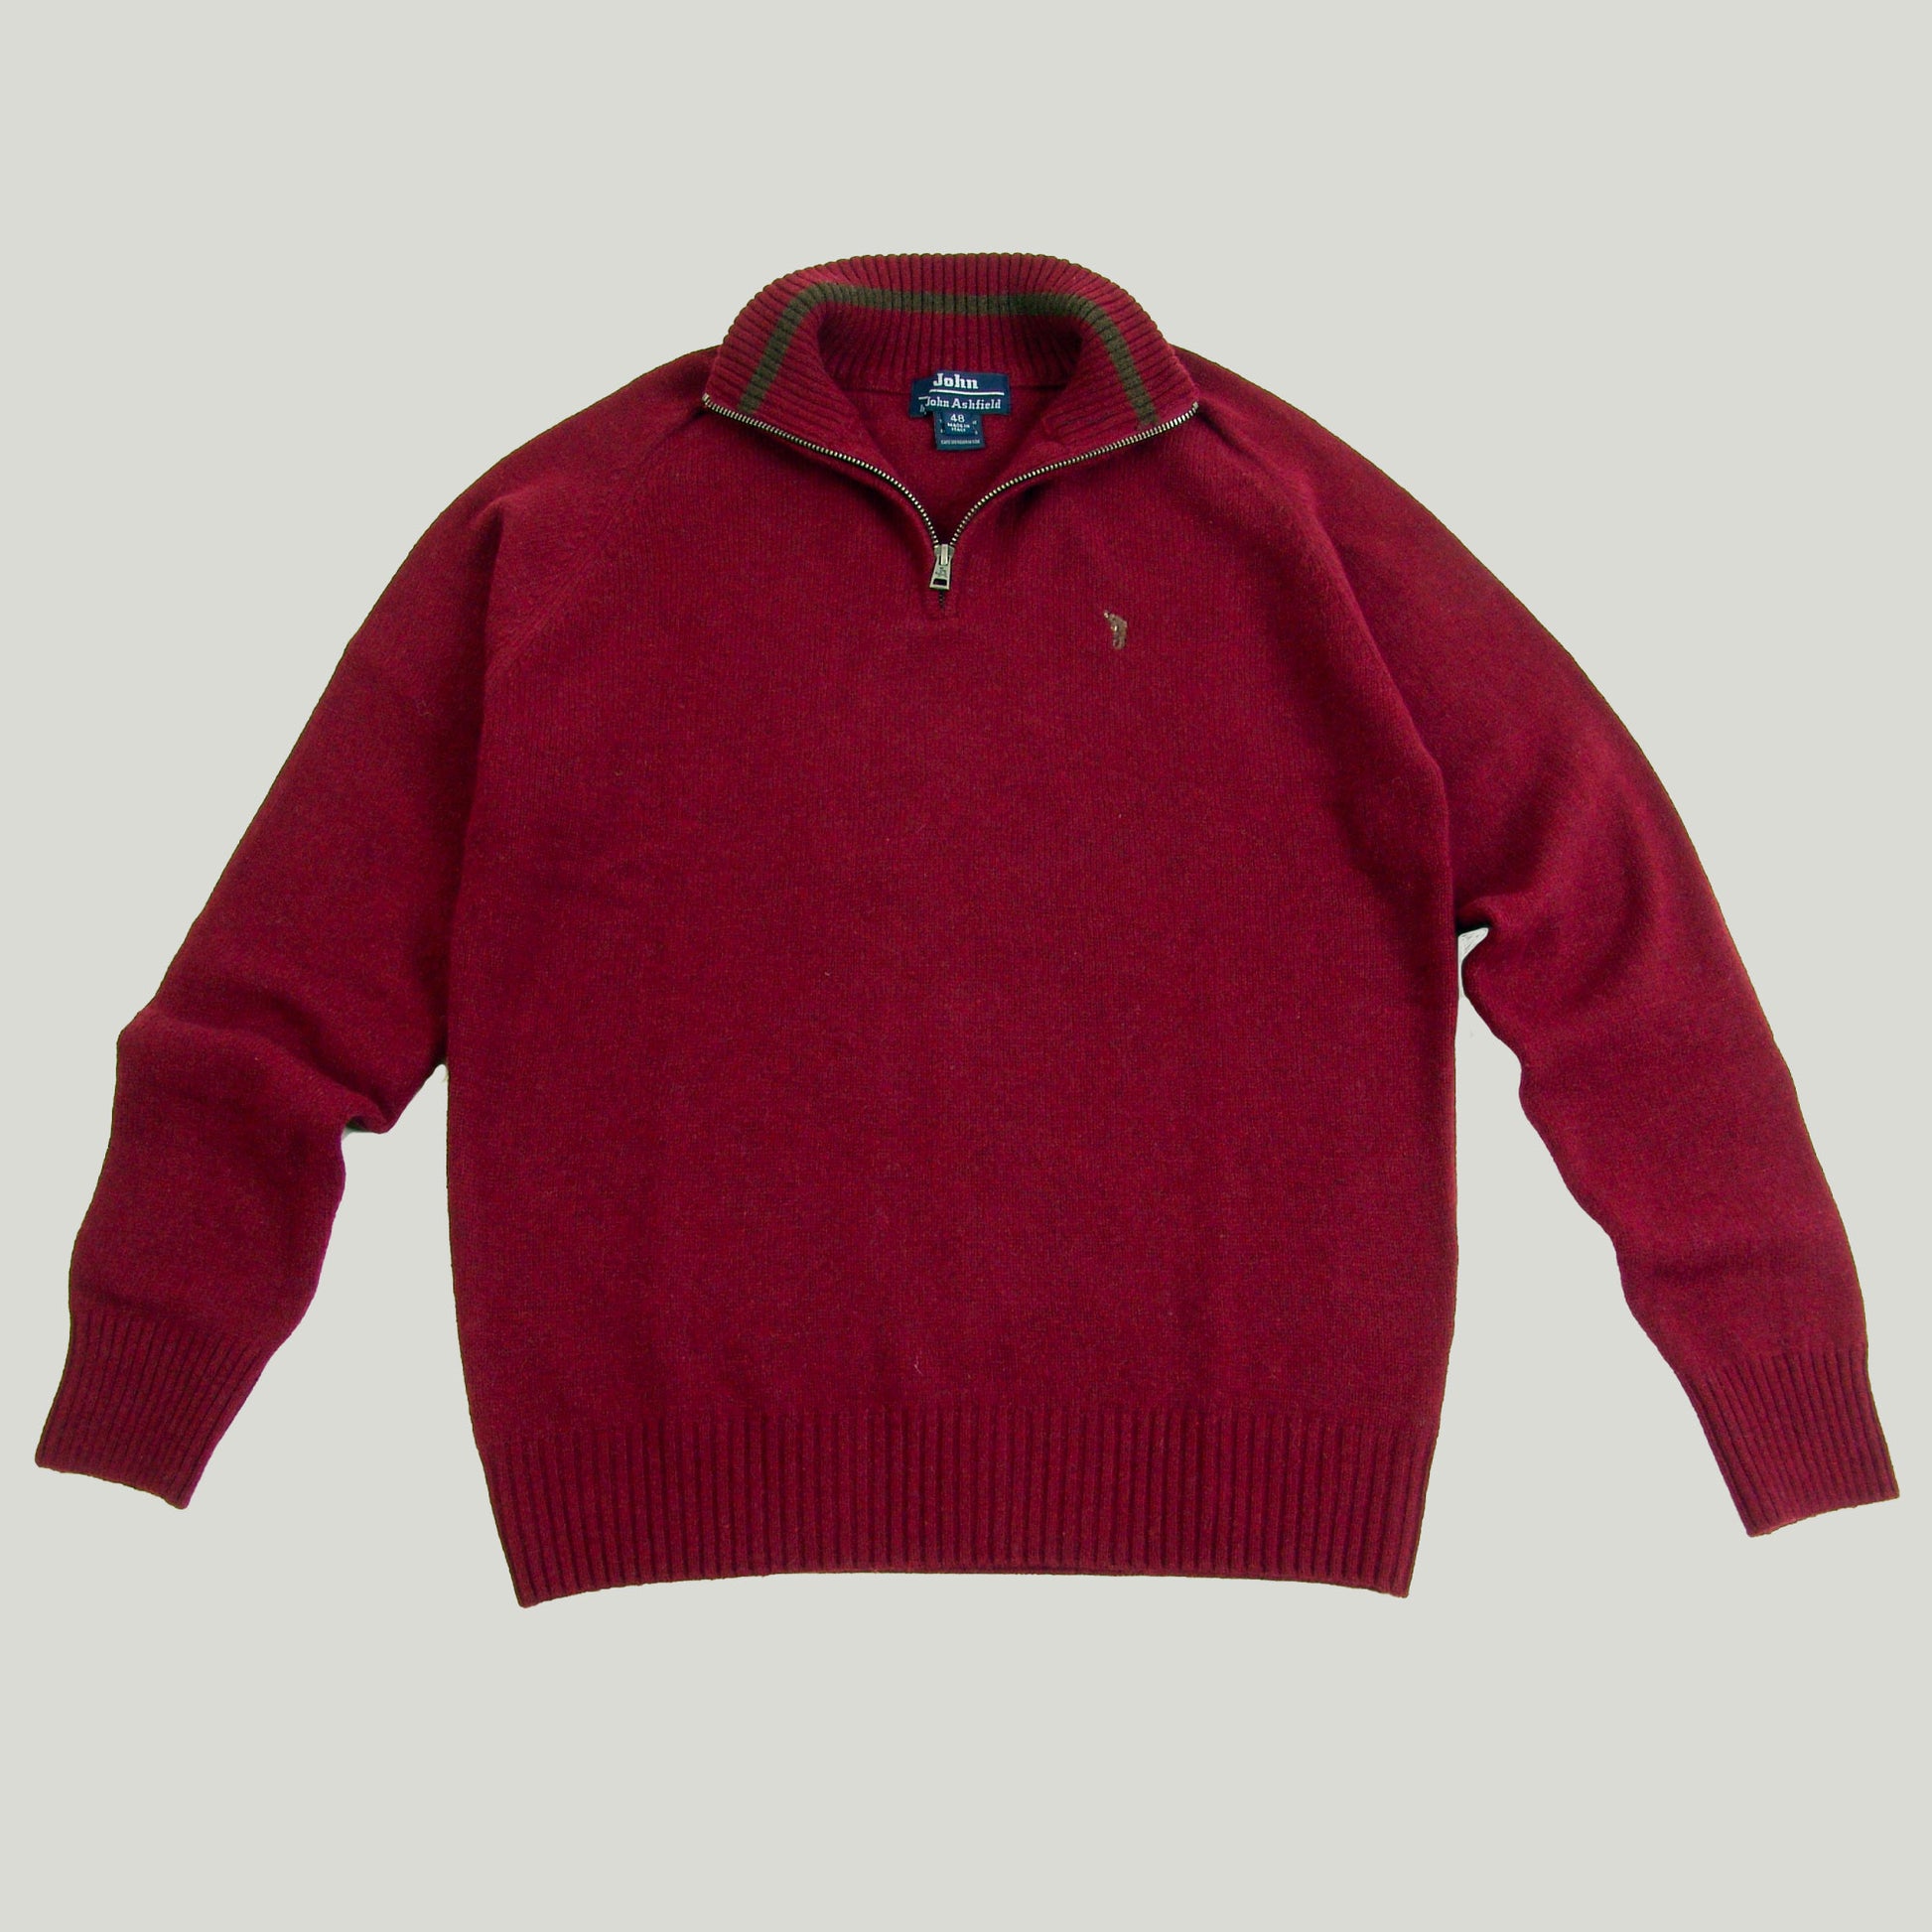 Chico's Embellished Zipper Sweater Ruana – Ken Zod